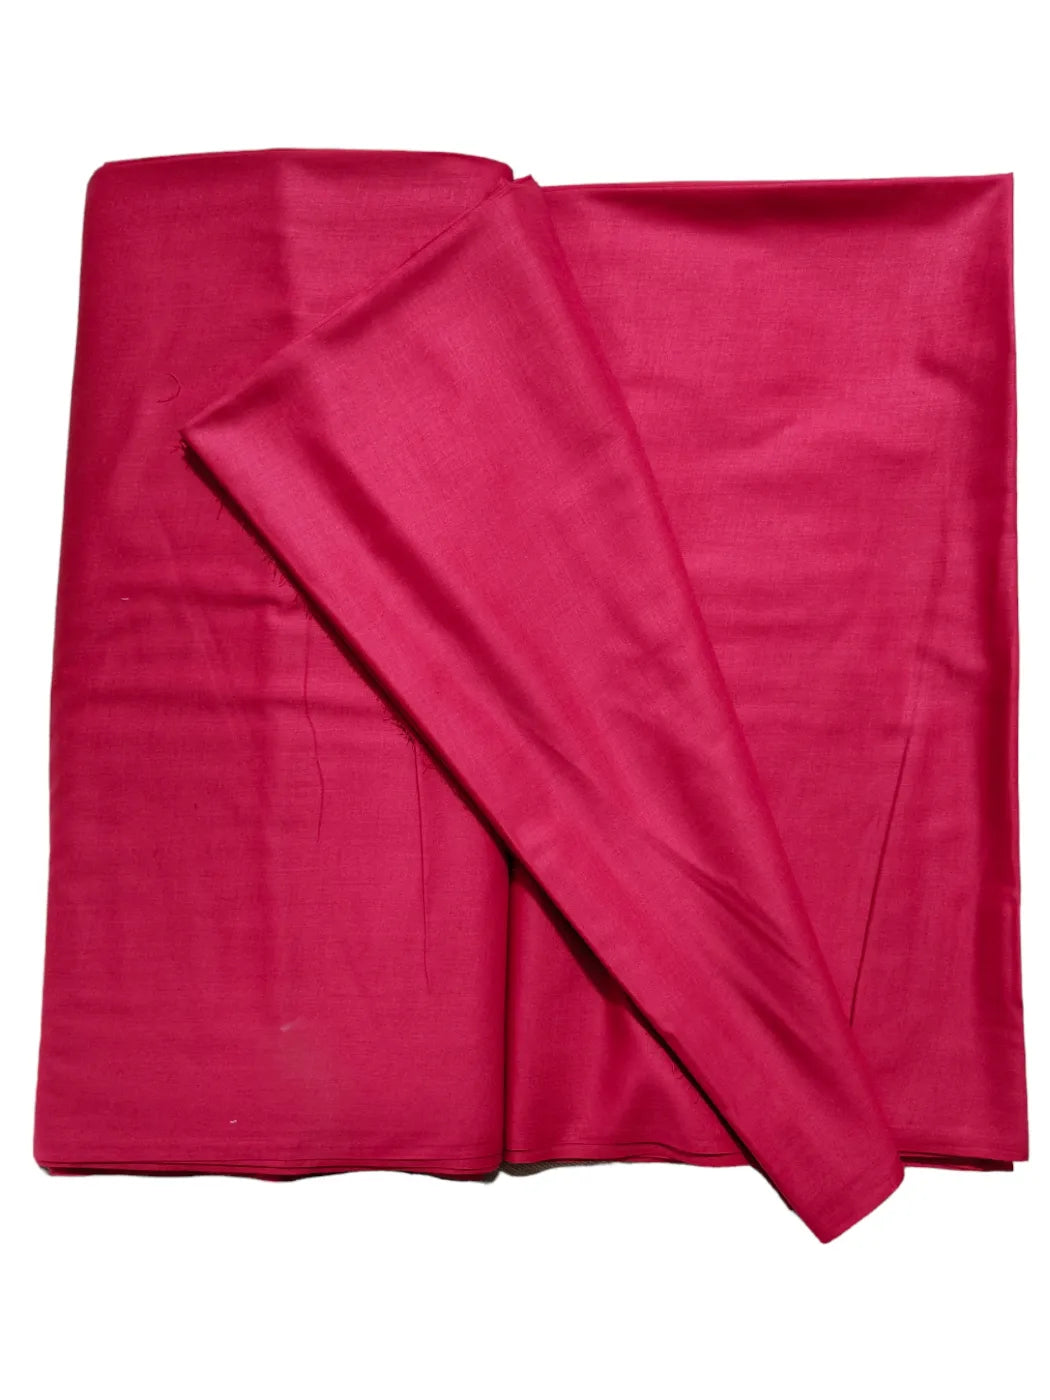 Salwar Suit Dress Material (Cotton, Unstitched)